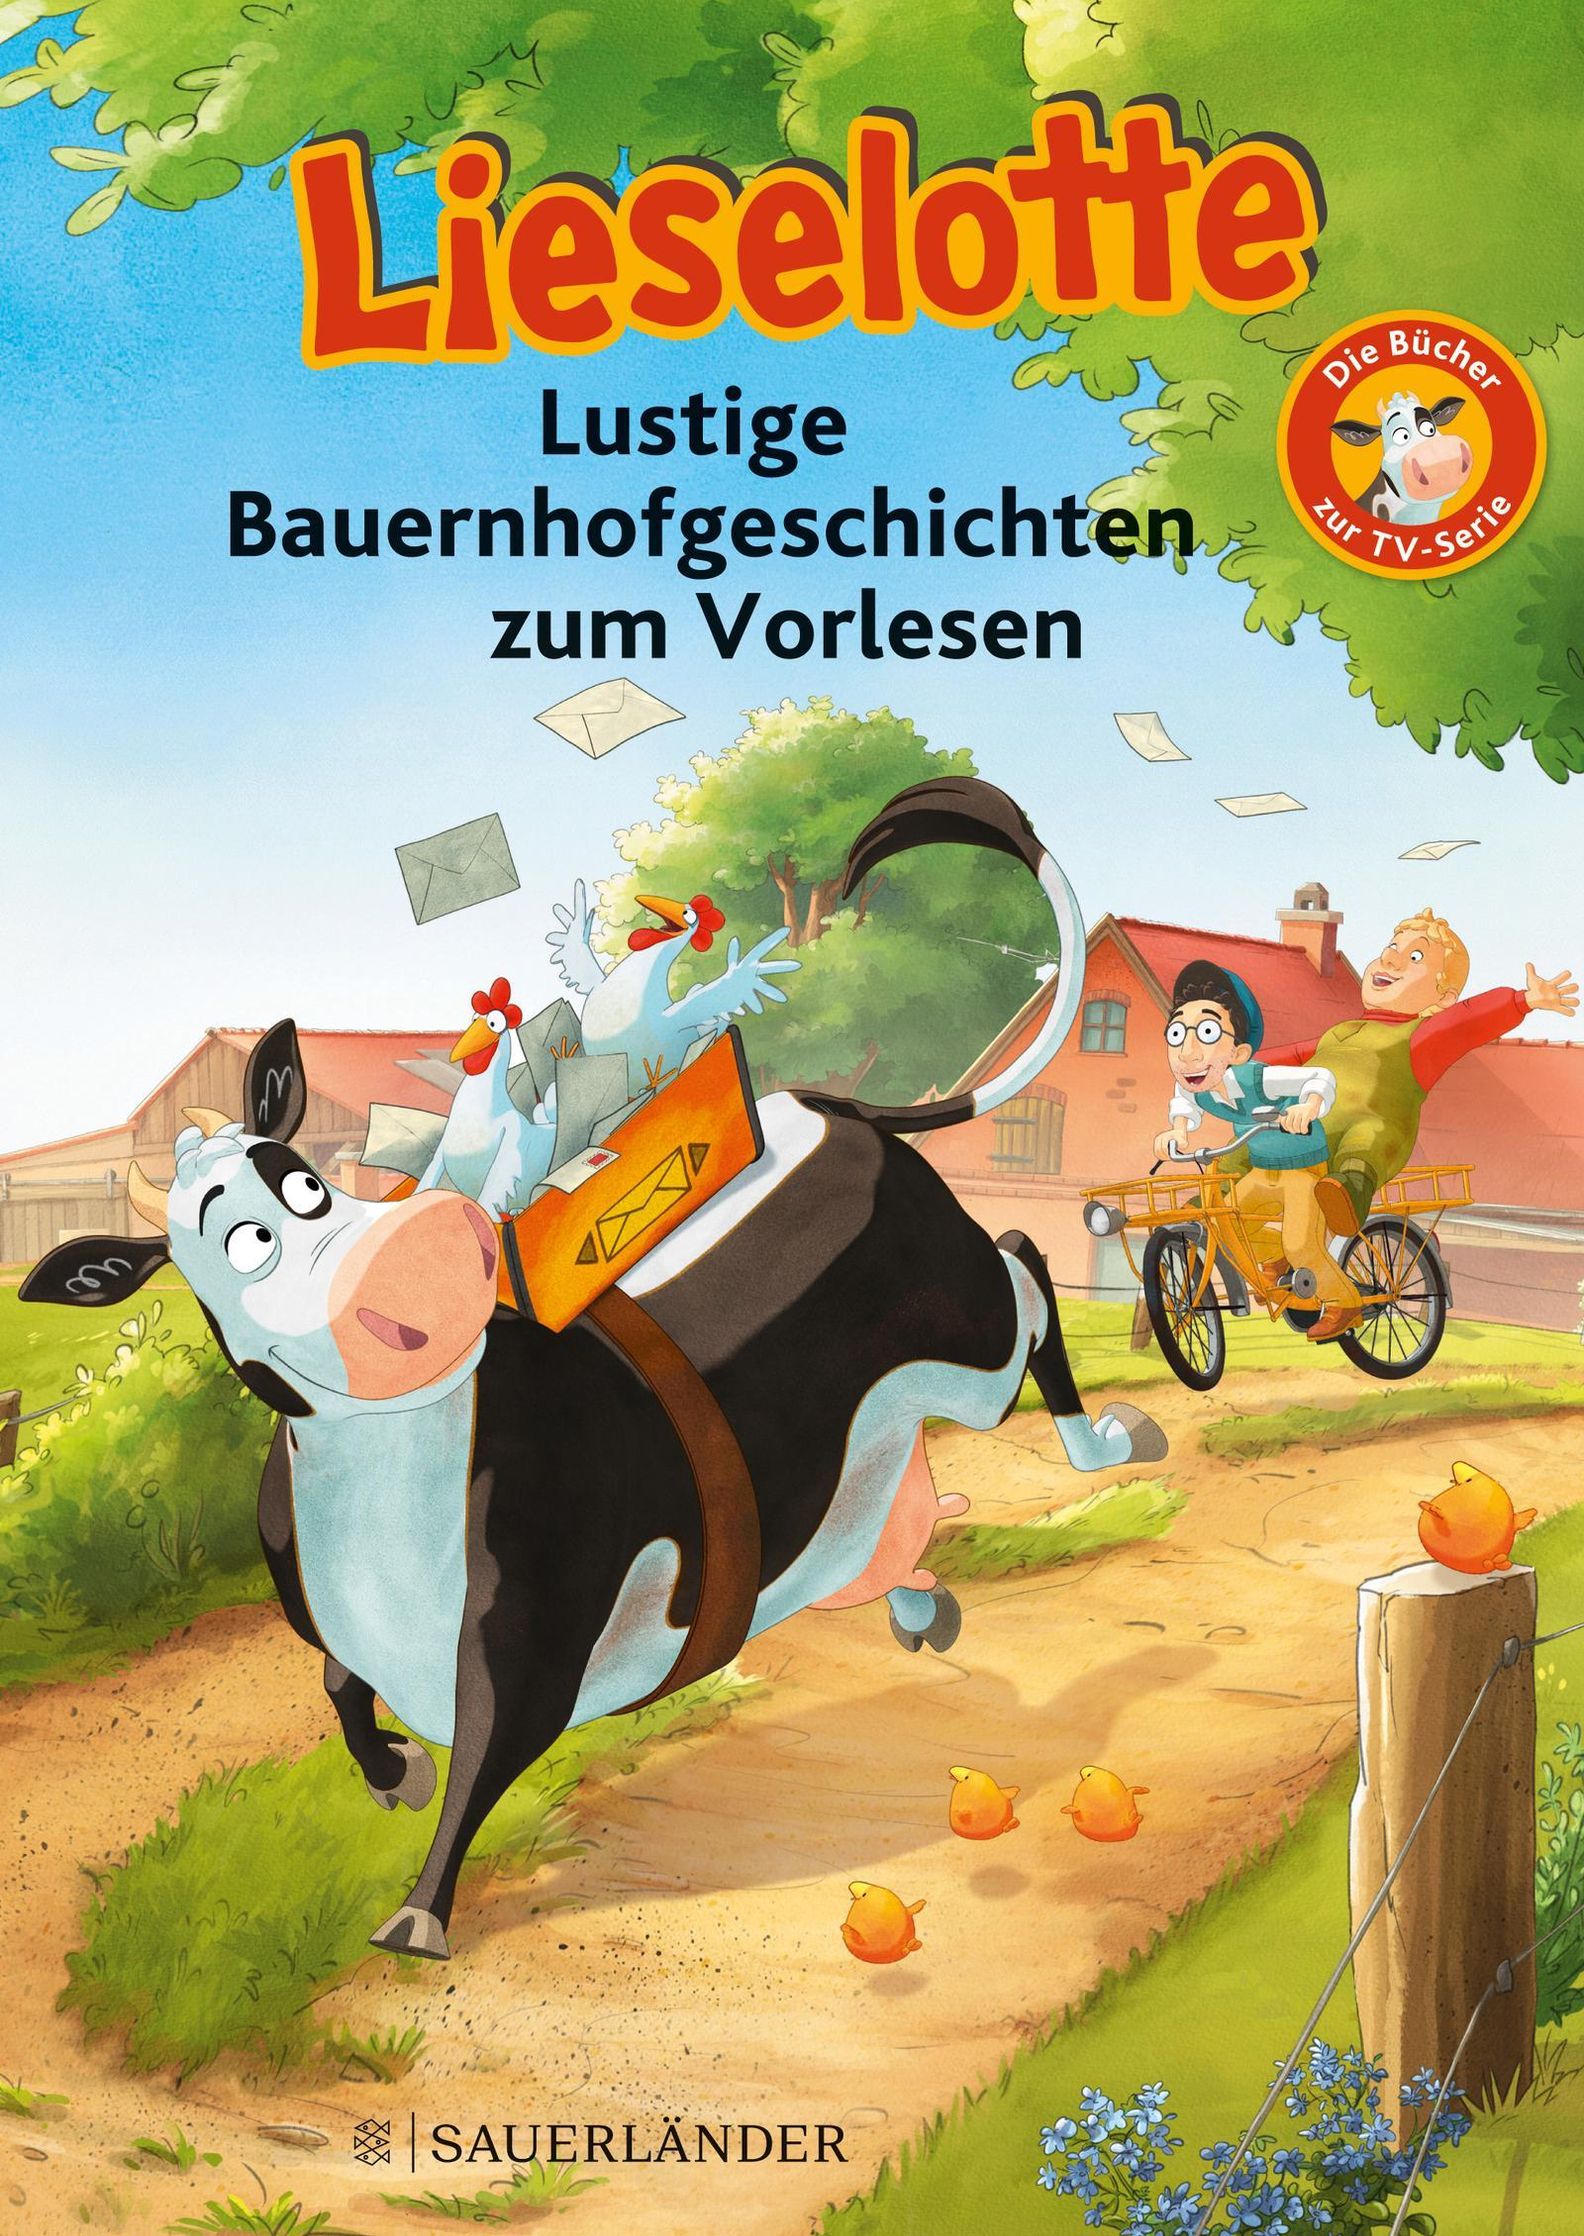 Lieselotte, Lustige Bauernhofgeschichten zum Vorlesen | Weltbild.at